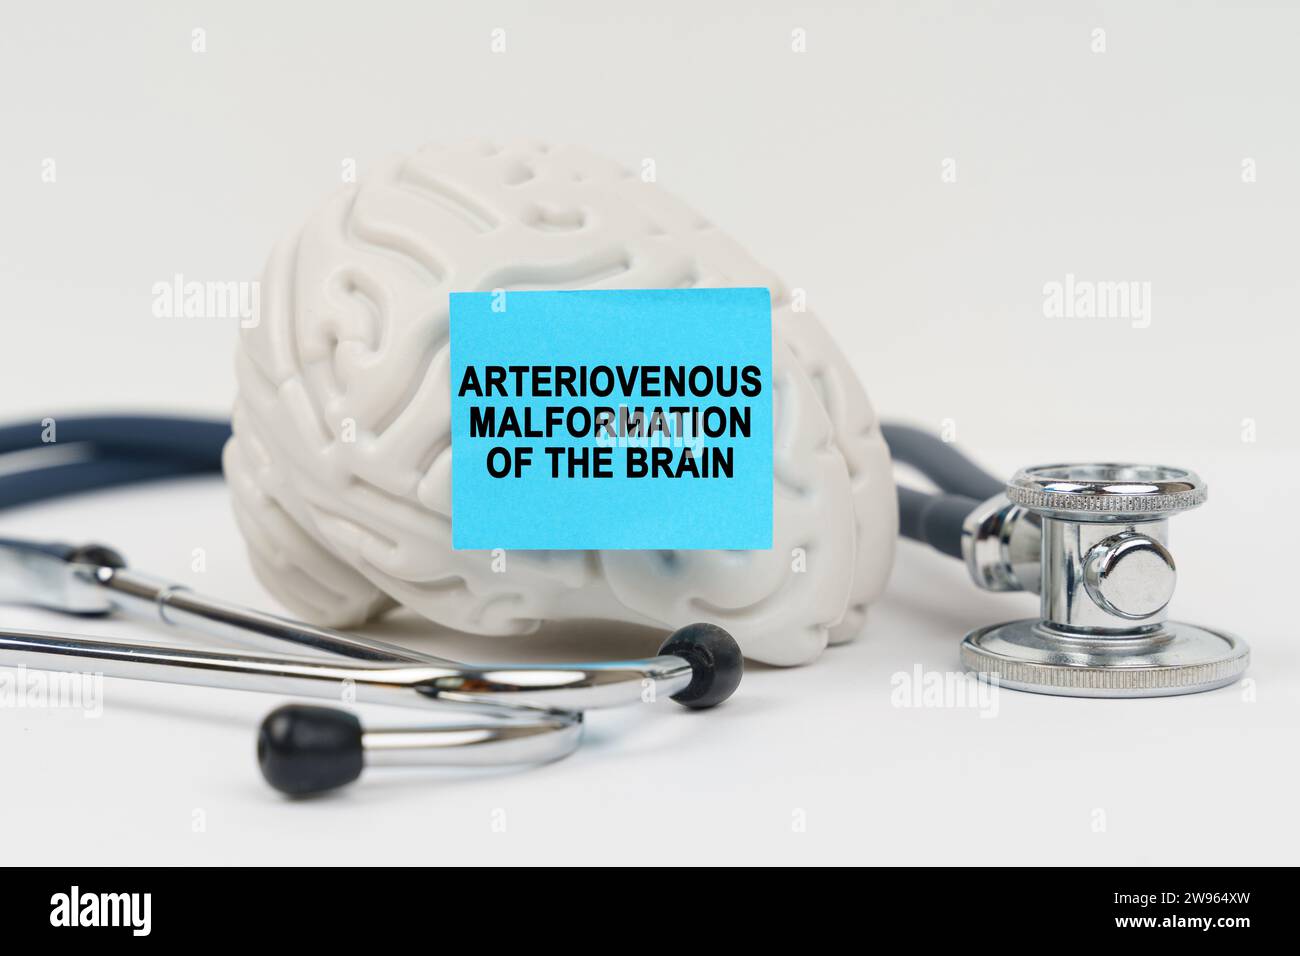 Medizinisches Konzept. Auf einer weißen Oberfläche neben dem Stethoskop befindet sich ein Gehirn, auf dem ein Aufkleber mit der Inschrift - arteriovenöse Missbildung des b steht Stockfoto